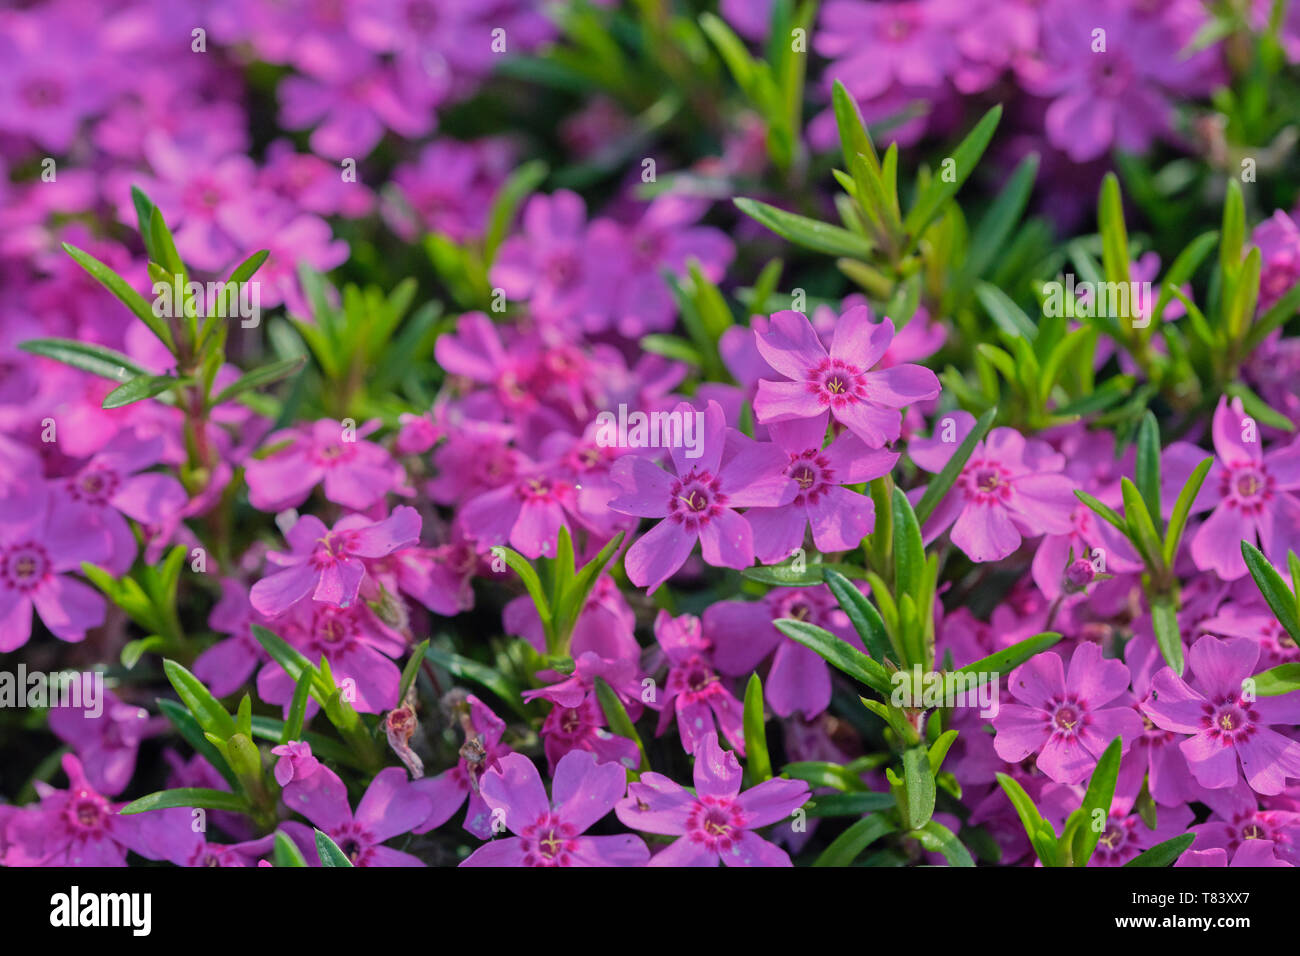 Nahaufnahme der Violetten phlox Blume in Lateinamerika genannt Phlox subulata, Bild - Befüllen Stockfoto